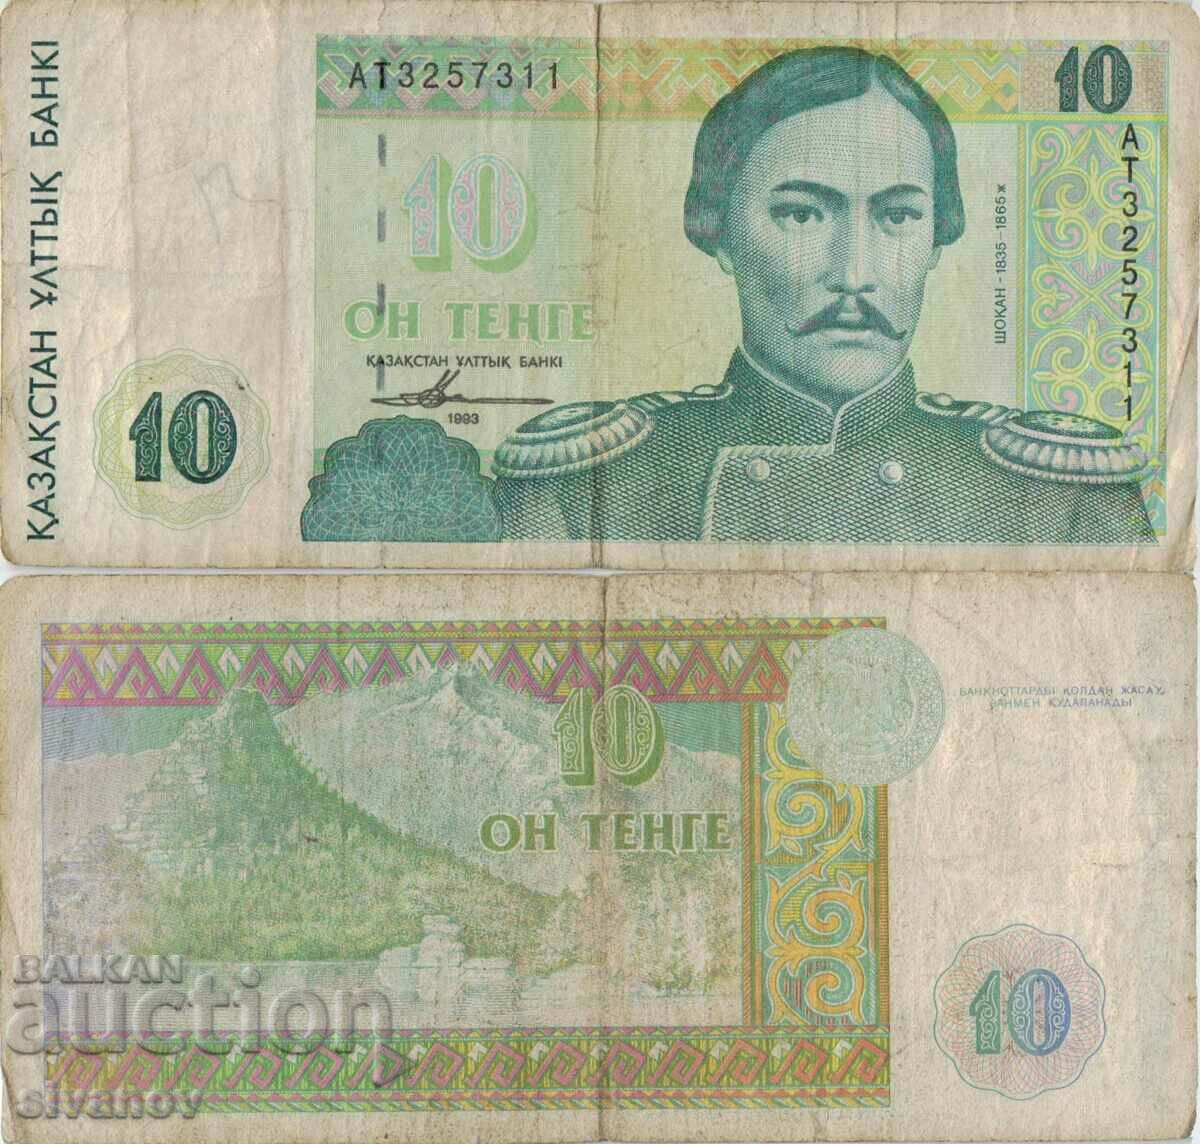 Καζακστάν 10 Tenge 1993 Τραπεζογραμμάτιο #5143